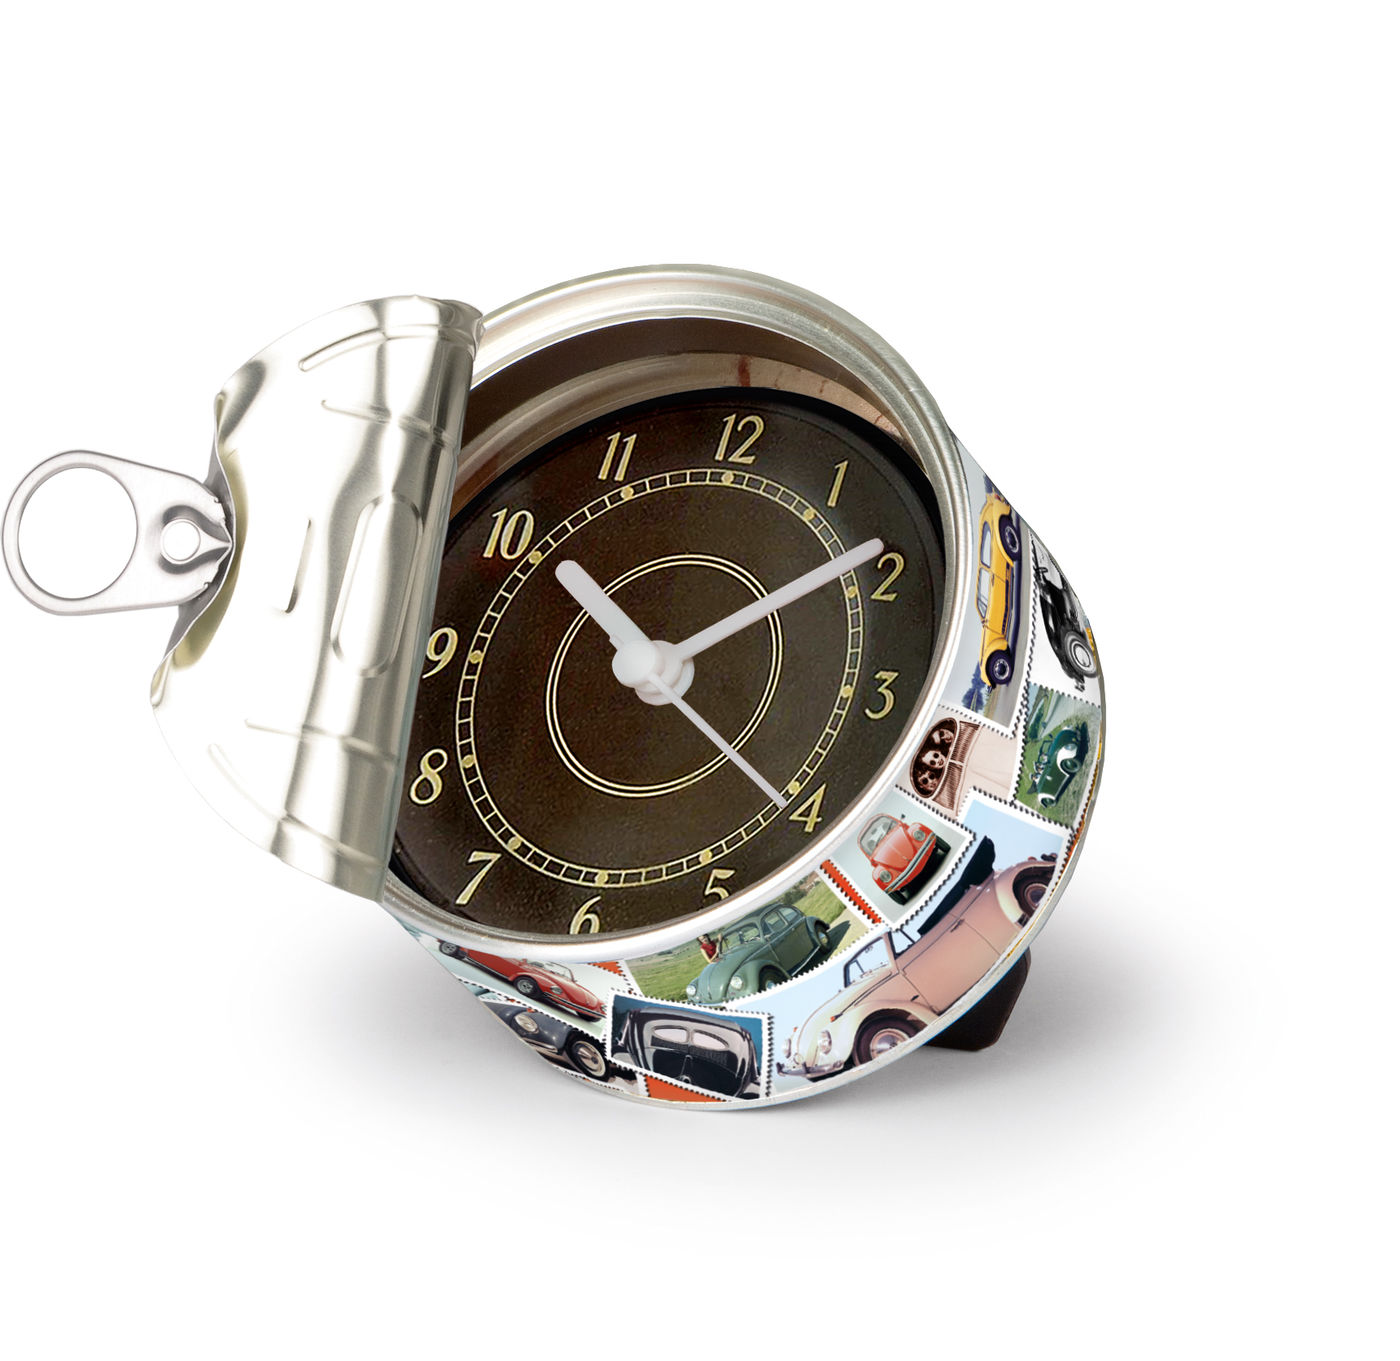 Zeituhr
Clock
Horloge
Zegar analogowy
Reloj
Orologio
Relógio